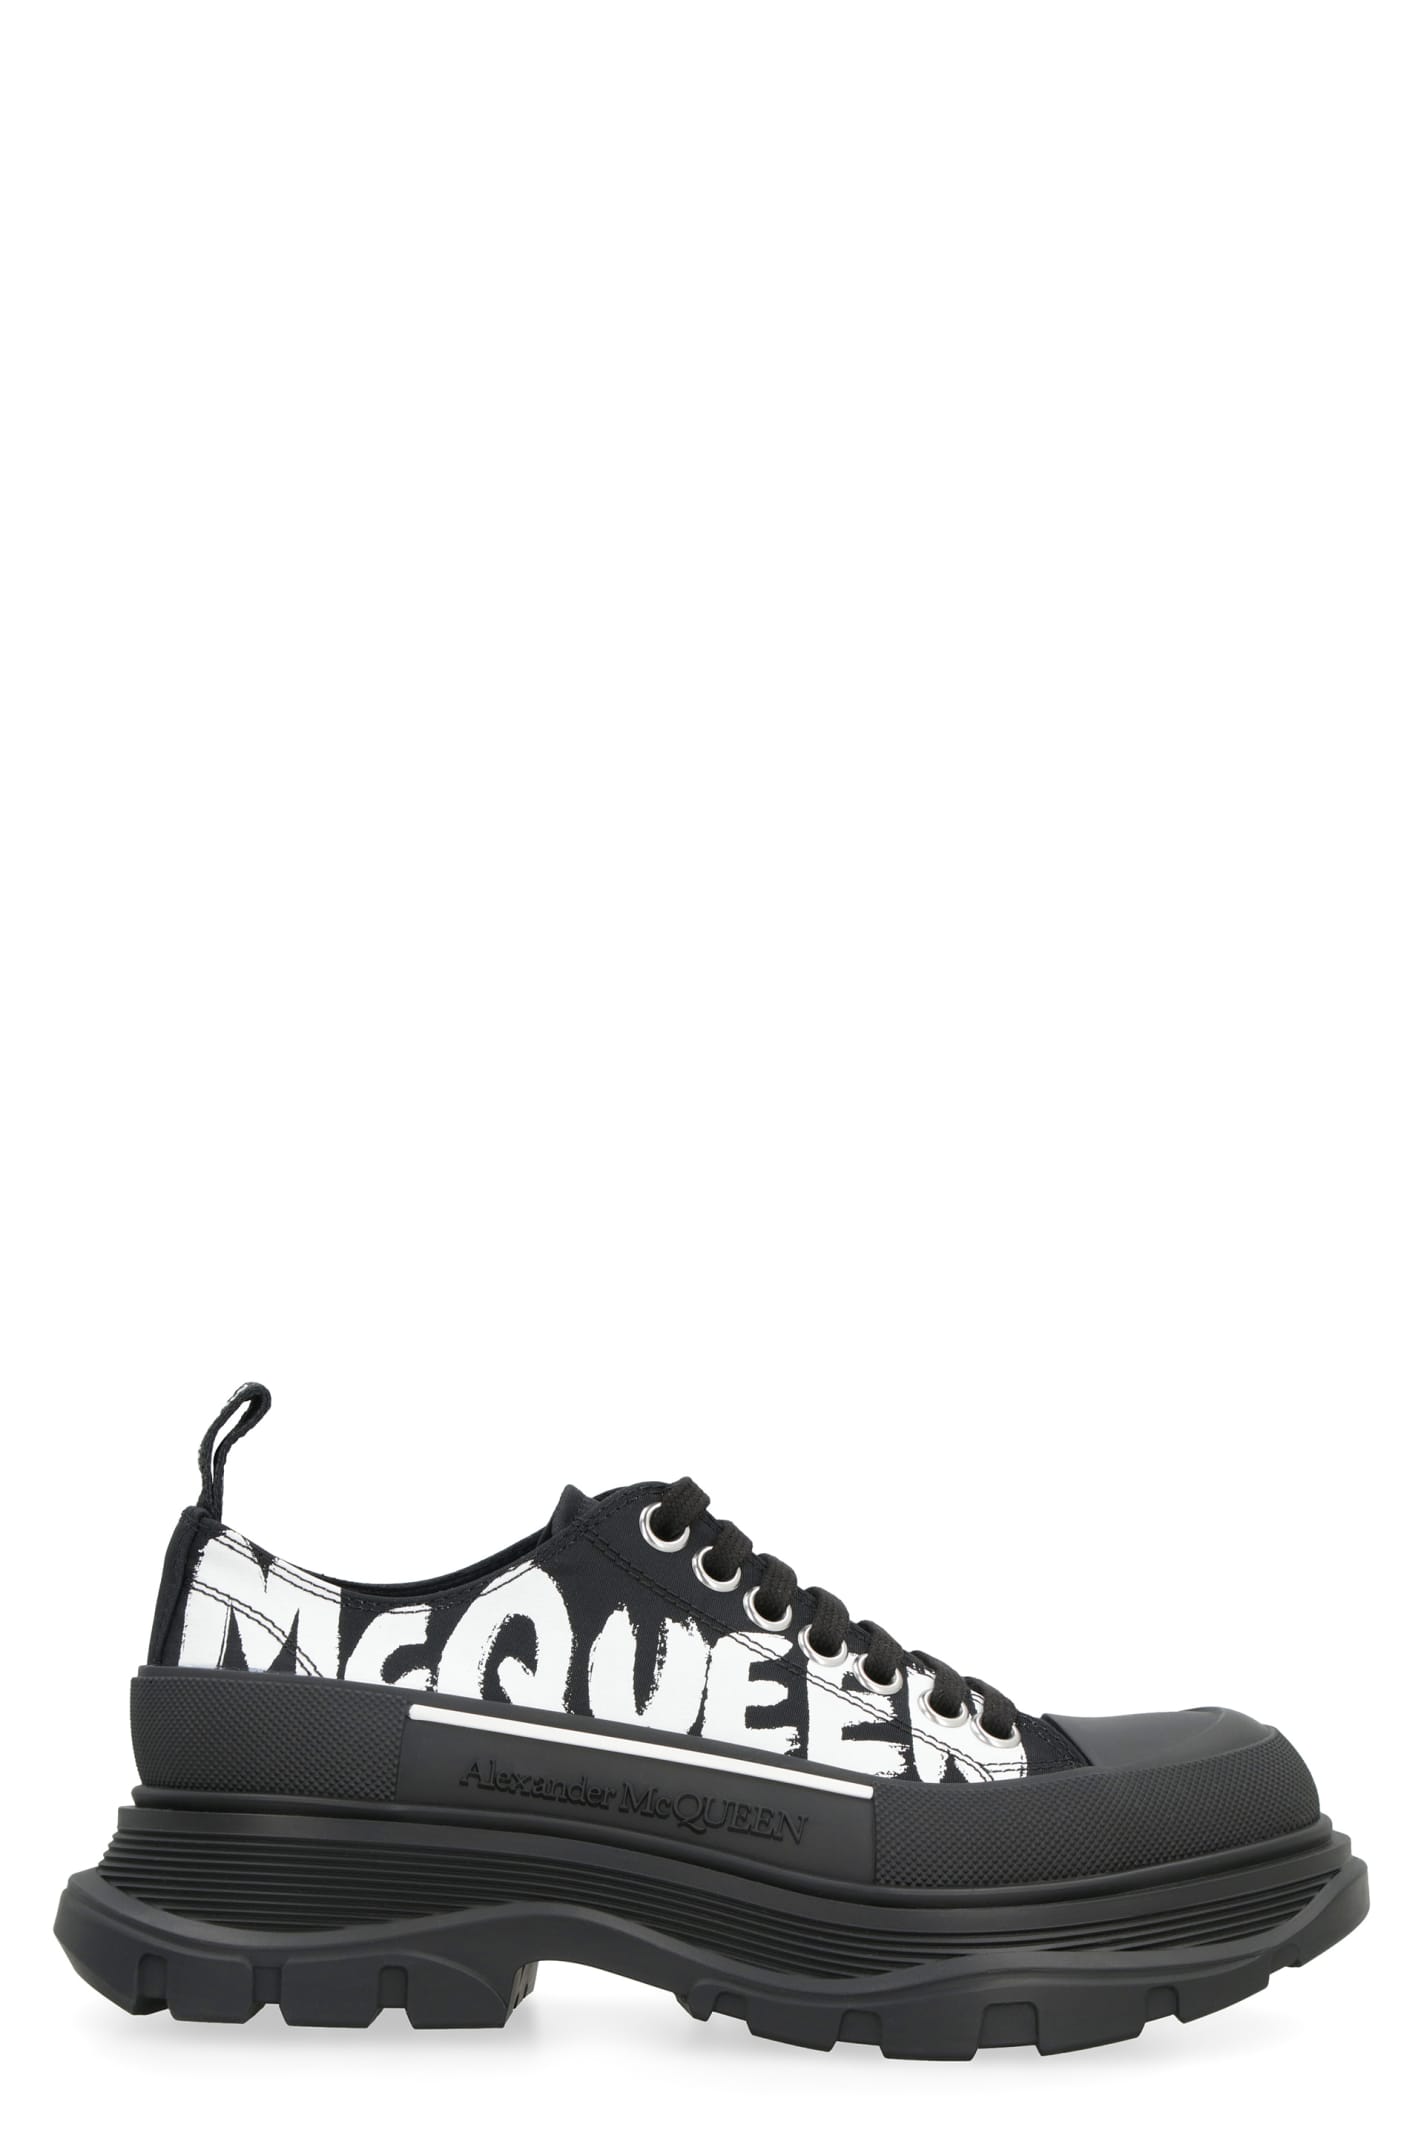 Alexander McQueen Tread Slick Fabric Low-top Sneakers